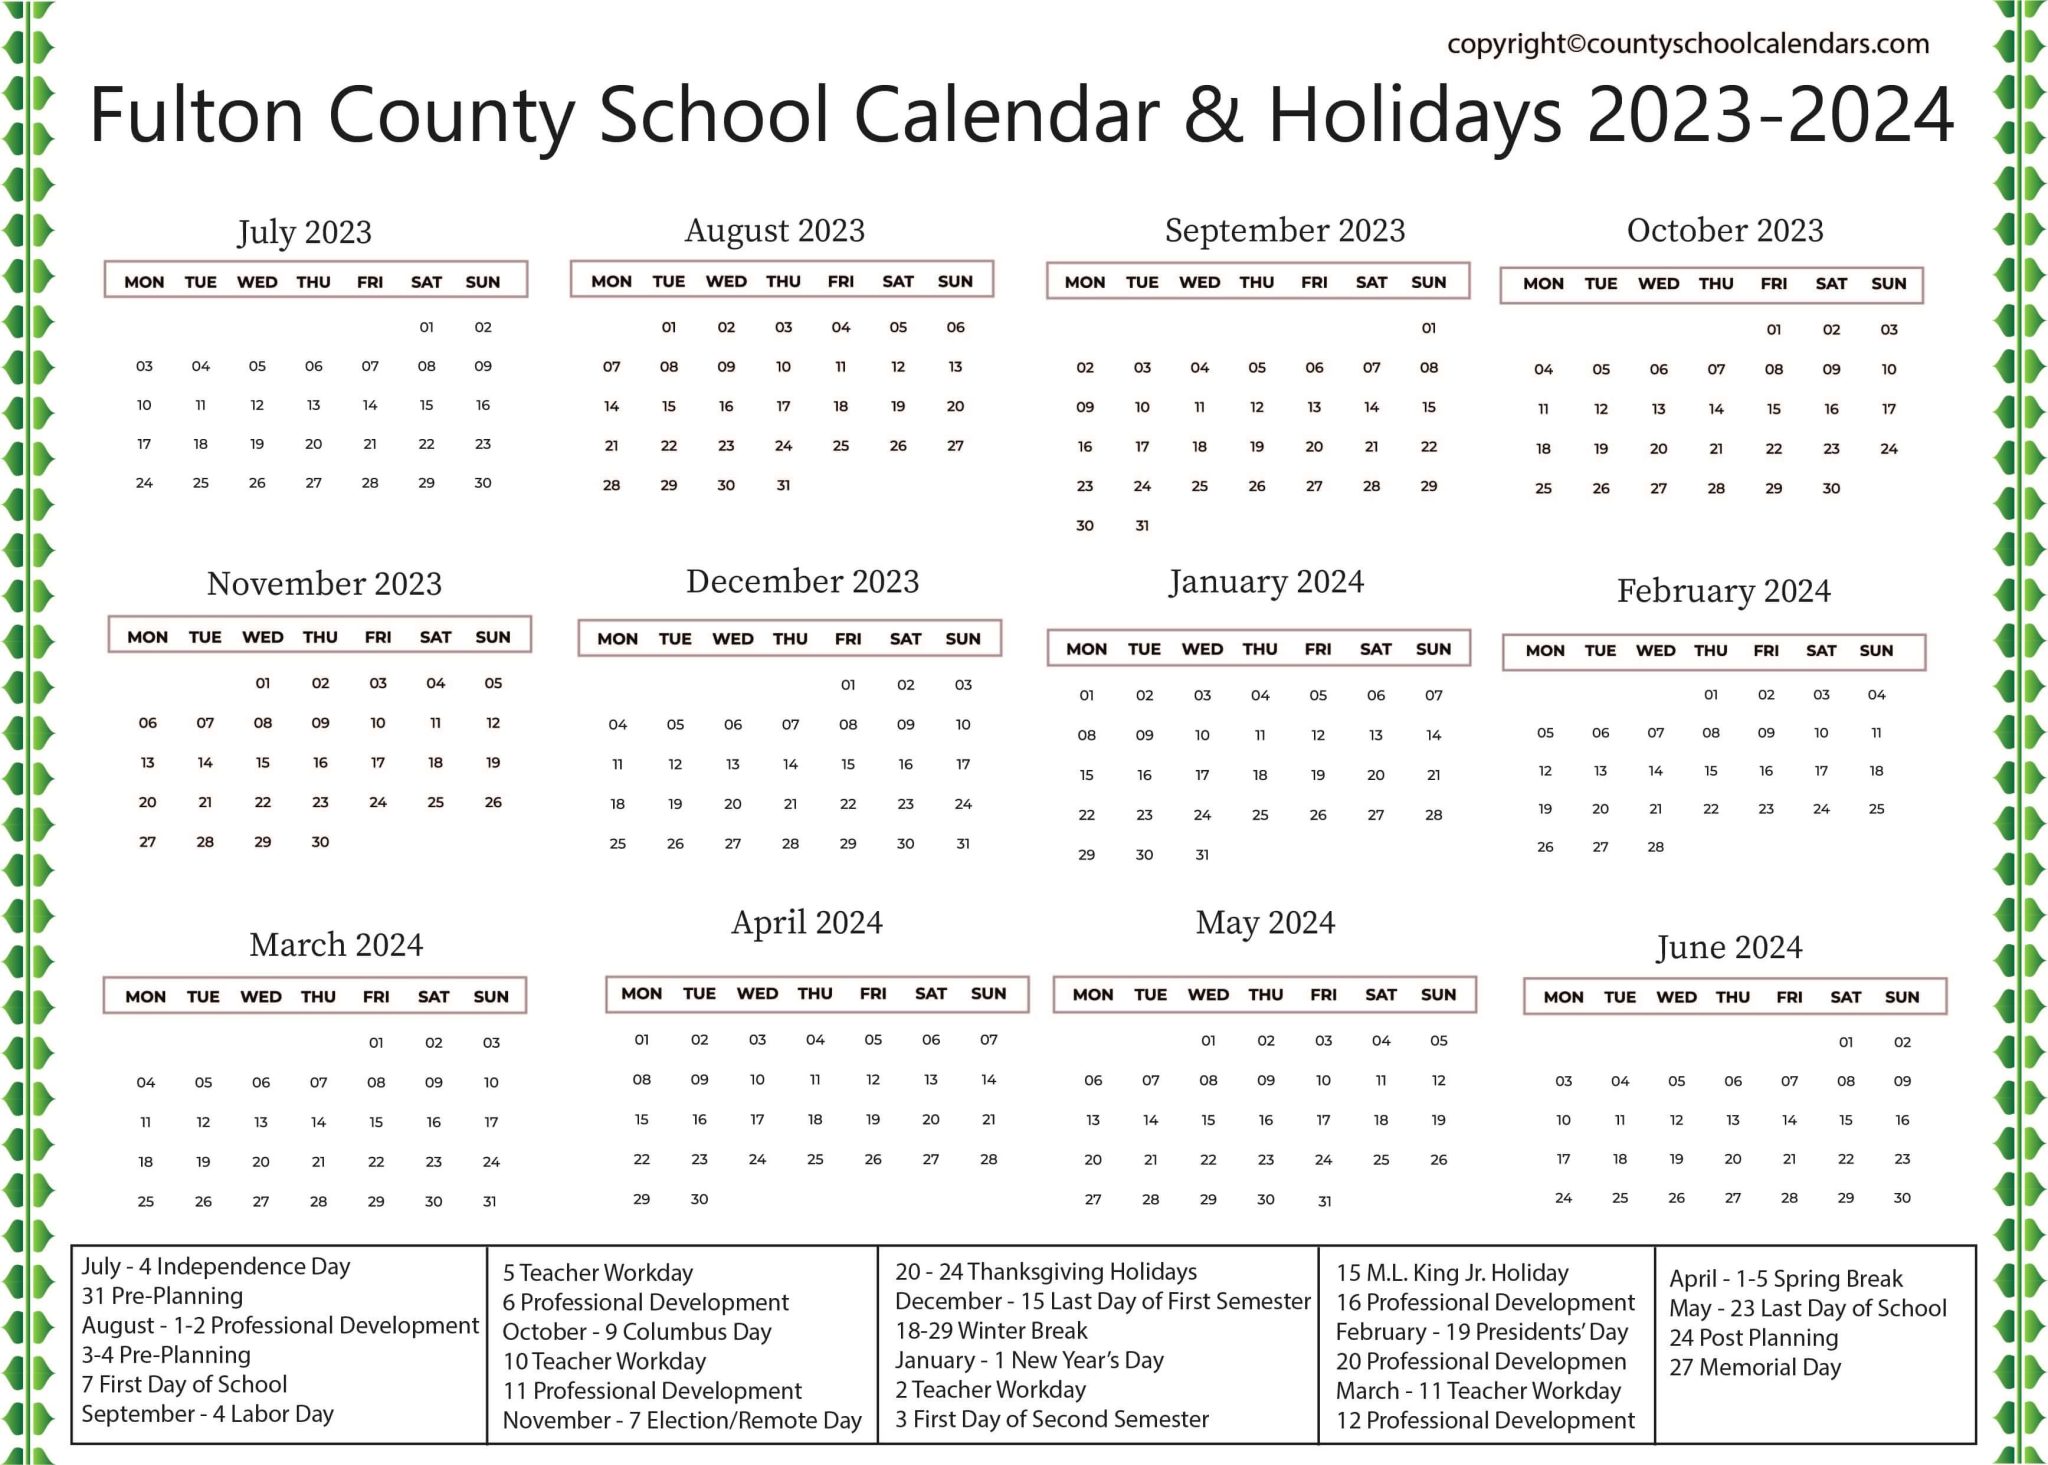 Fulton County School Calendar Holidays 2023 2024 3 2048x1465 